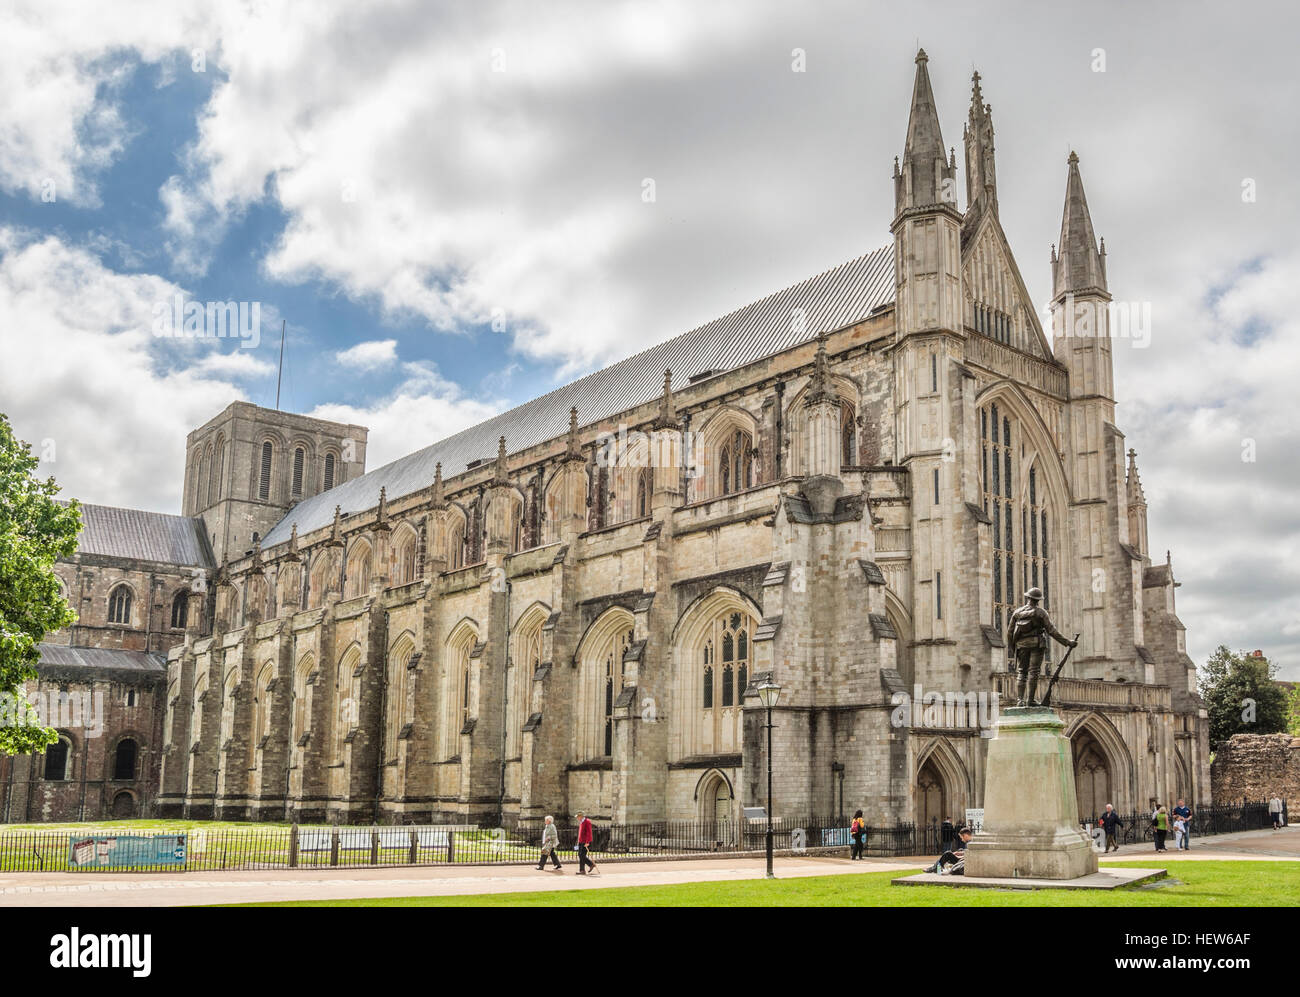 La cathédrale de Winchester, Hampshire, Angleterre Banque D'Images